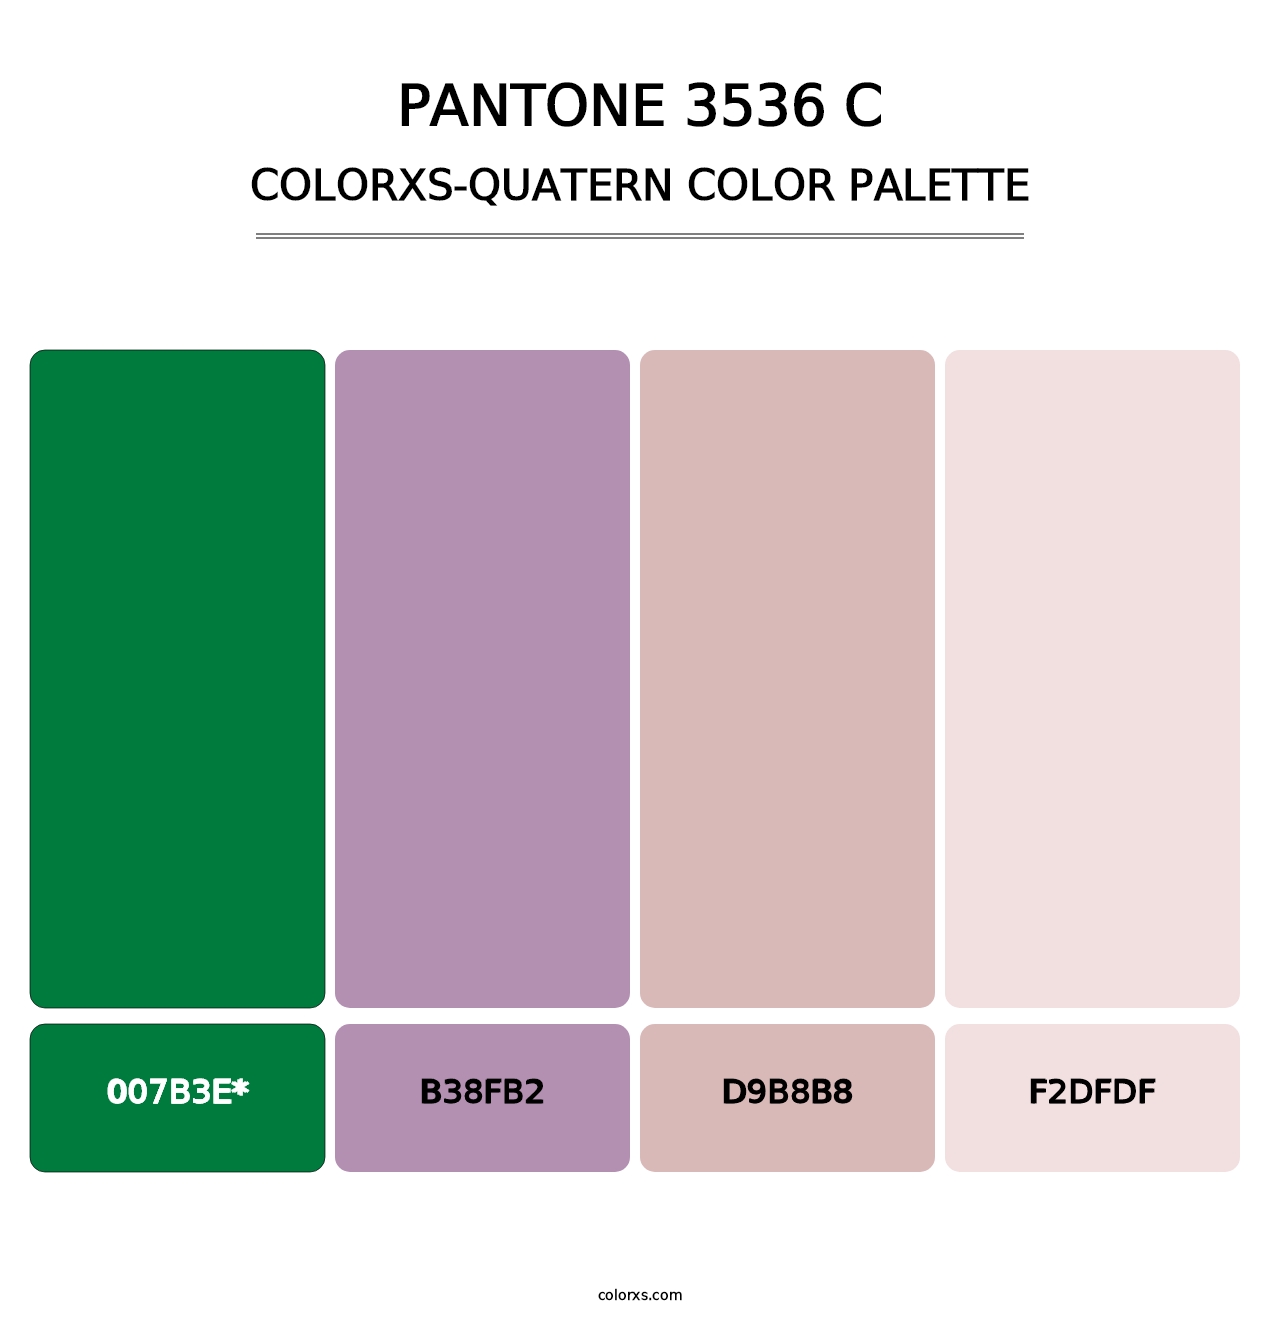 PANTONE 3536 C - Colorxs Quatern Palette